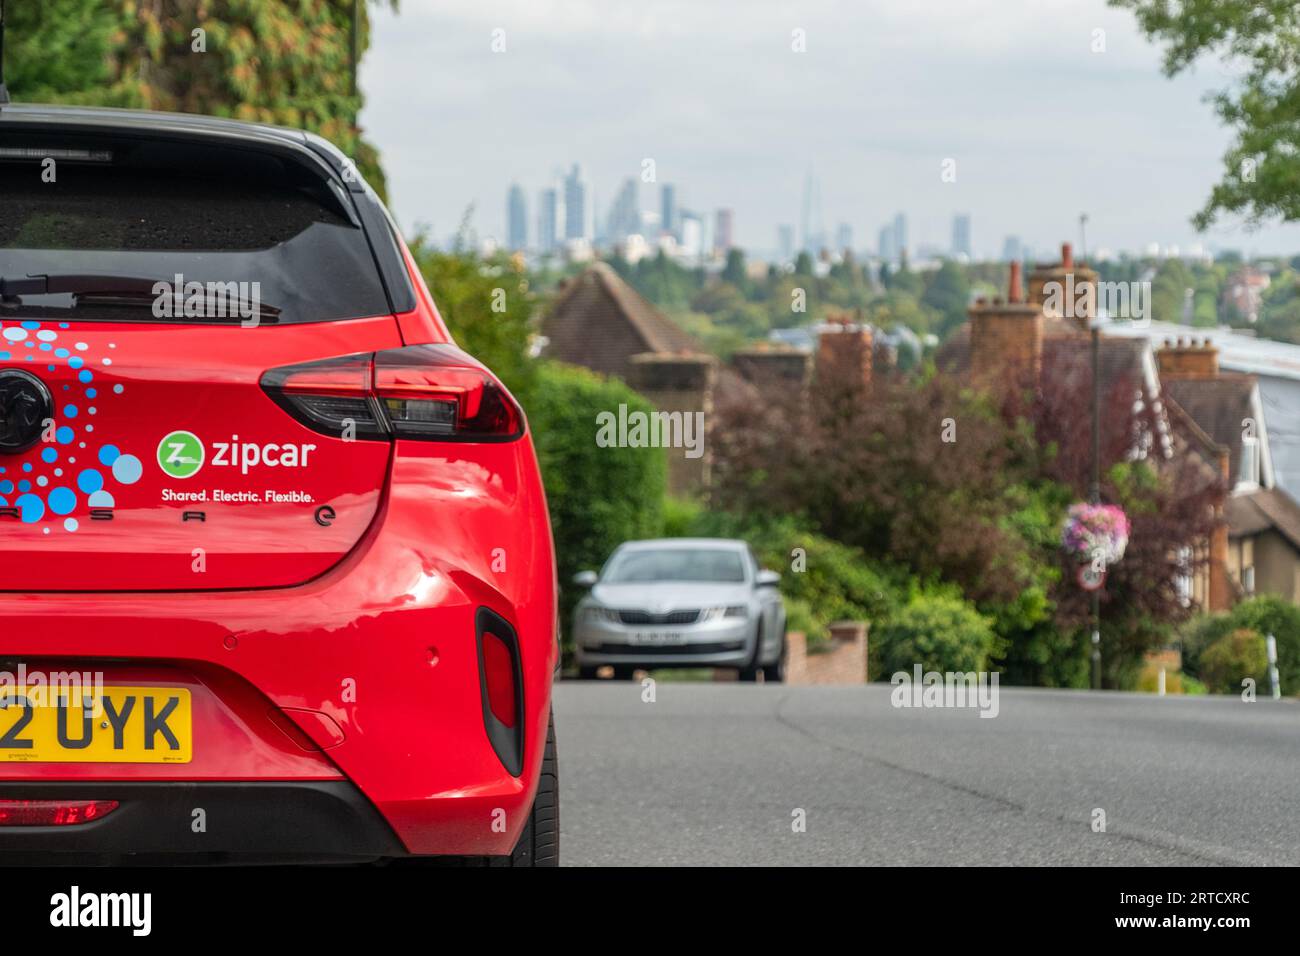 LONDRES- 12 septembre 2023 : Zipcar garé dans la rue avec la Skyline de Londres en arrière-plan - le plus grand club de partage de voitures du Royaume-Uni Banque D'Images